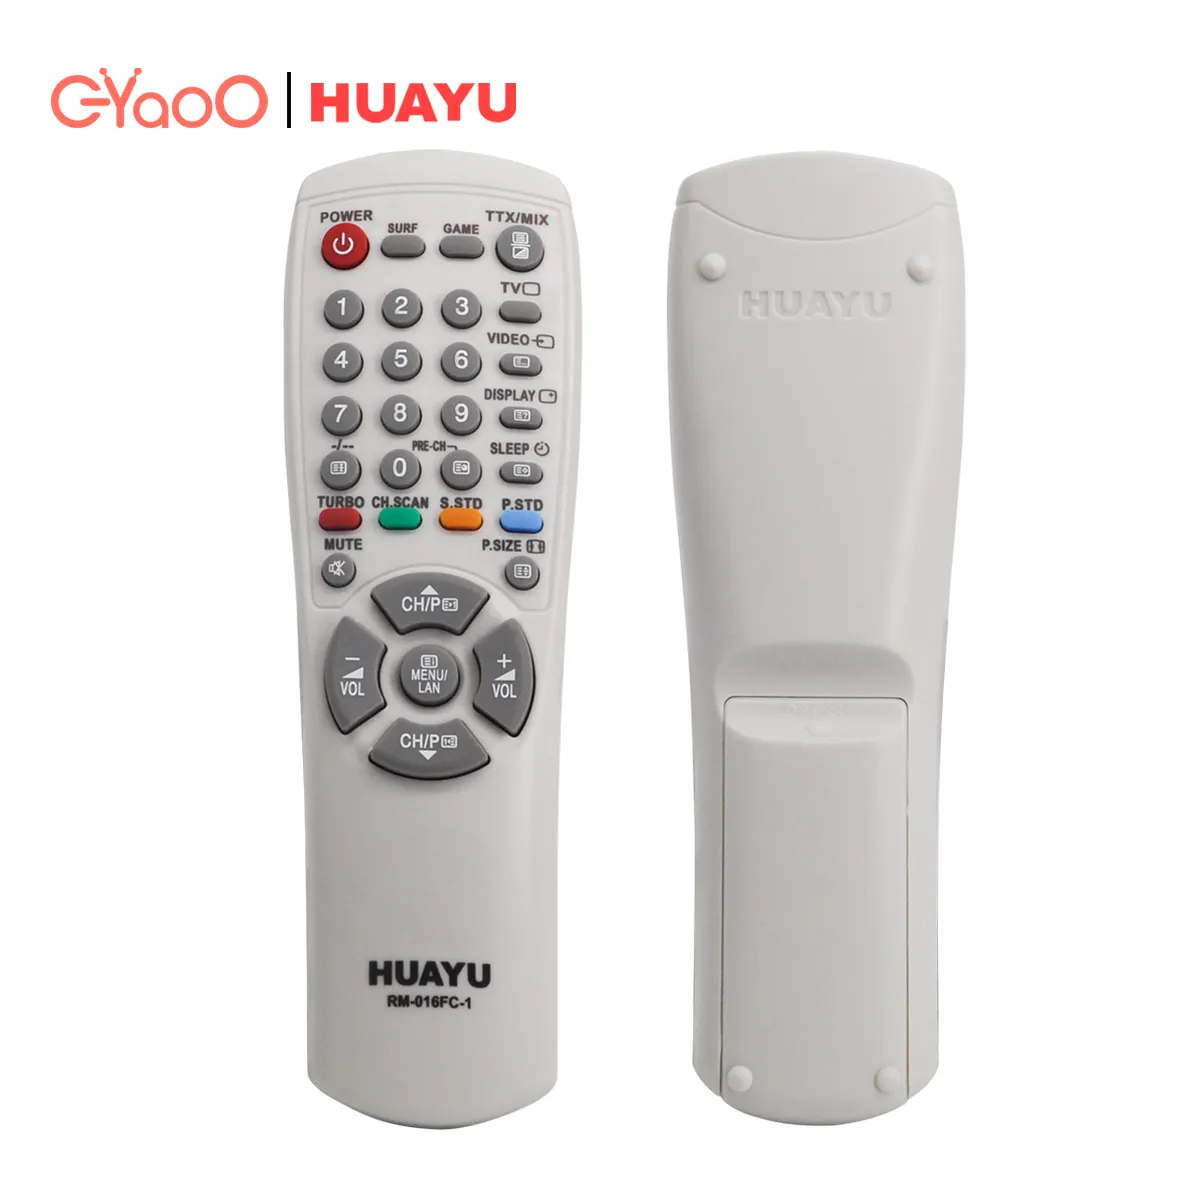 HUAYU-mando a distancia RM-016FC CRT para TV, mando a distancia inalámbrico para TV antigua, Color gris, DVD